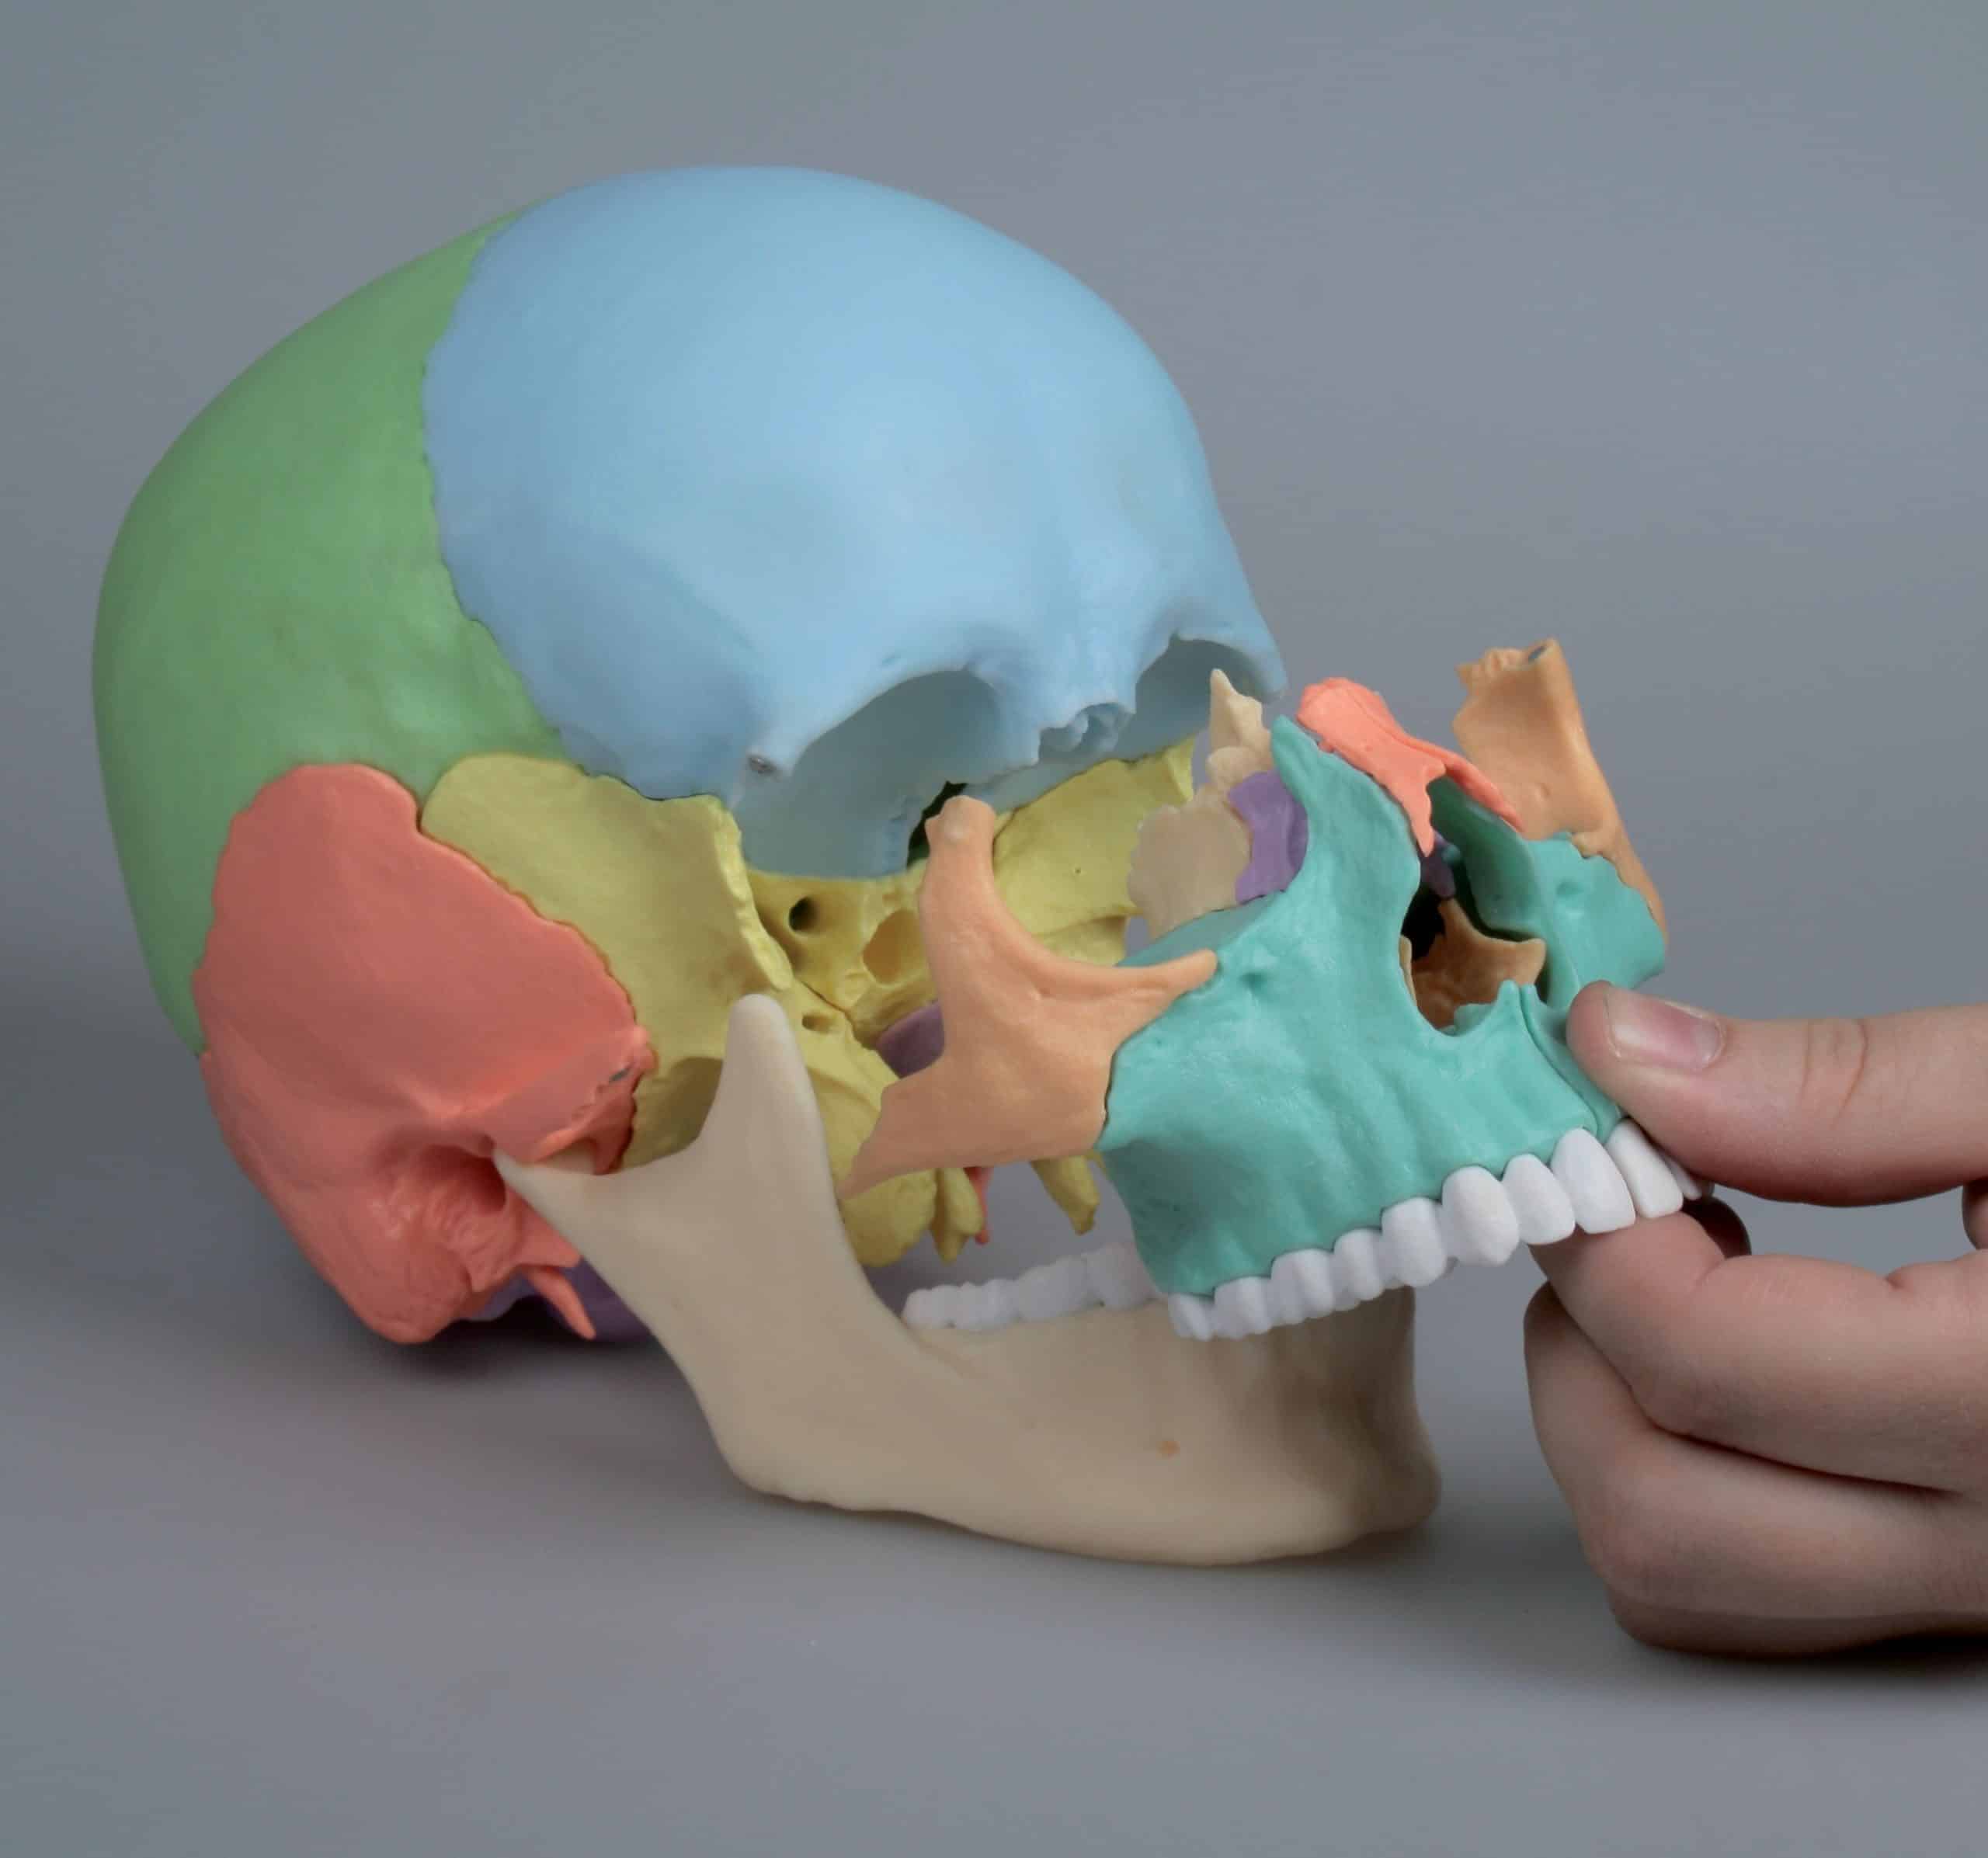 Crâne humain didactique numéroté - Modèle allemand - OVIRY